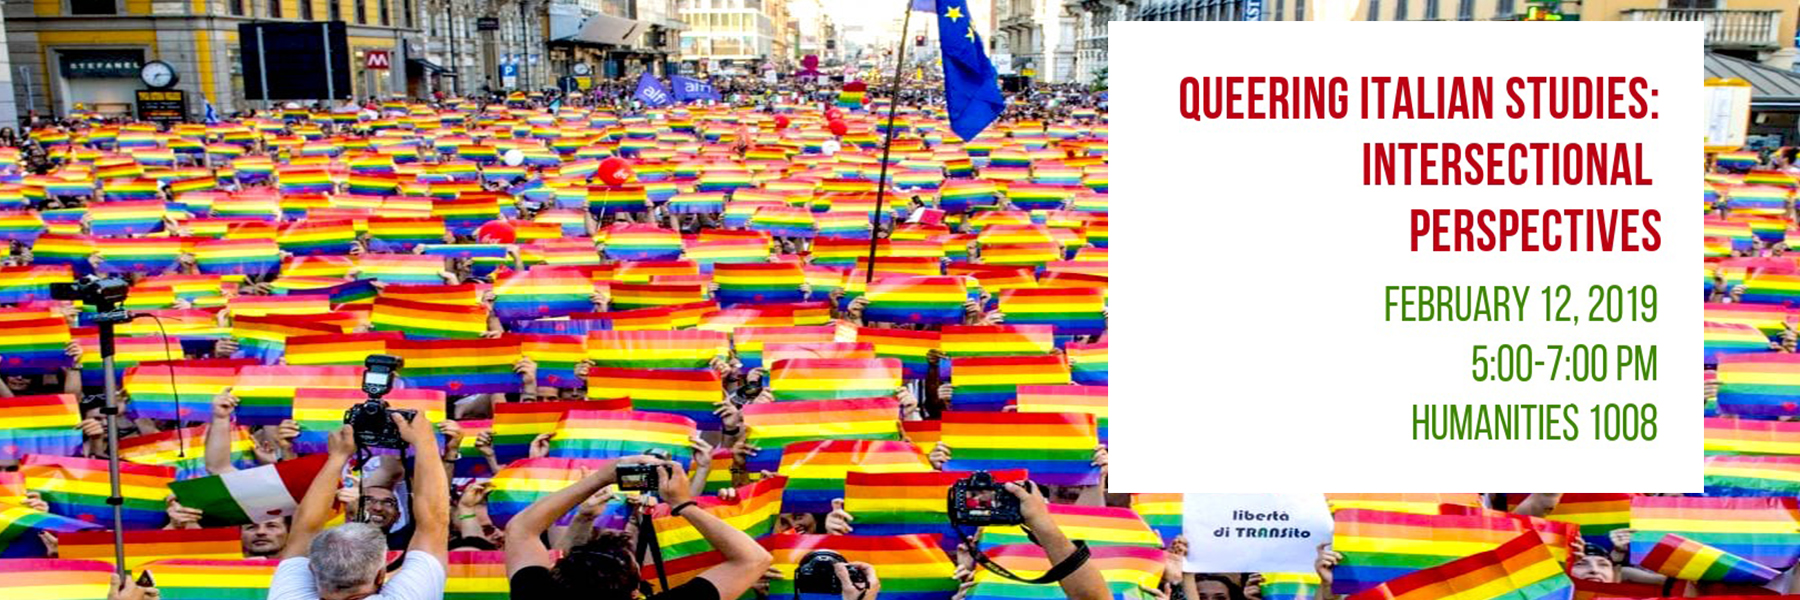 Queering Italian Studies Srping 2019 banner